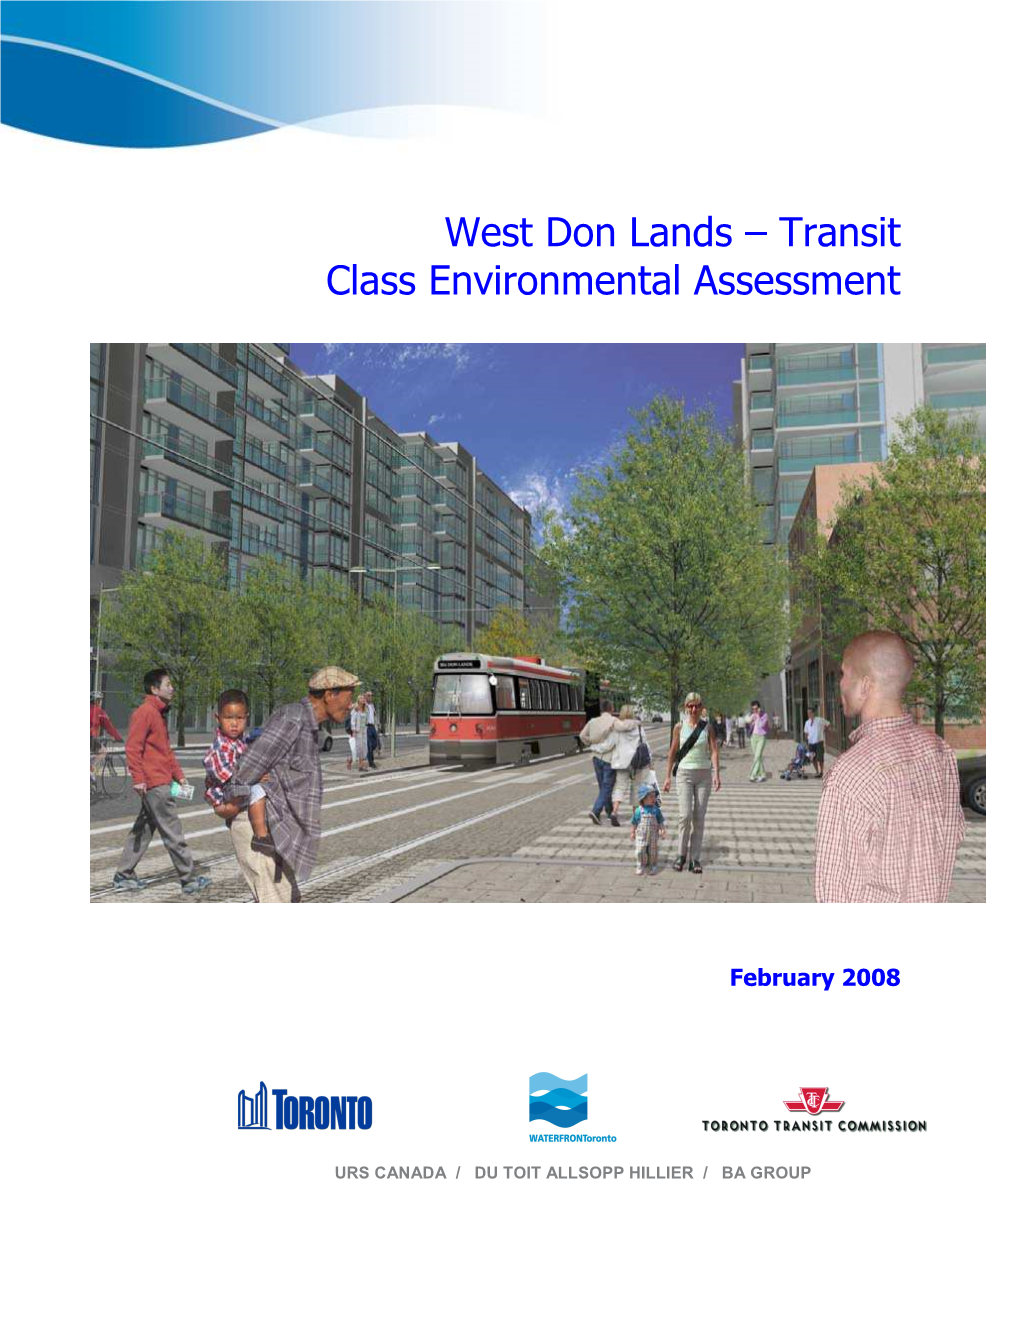 West Don Lands Transit Class EA